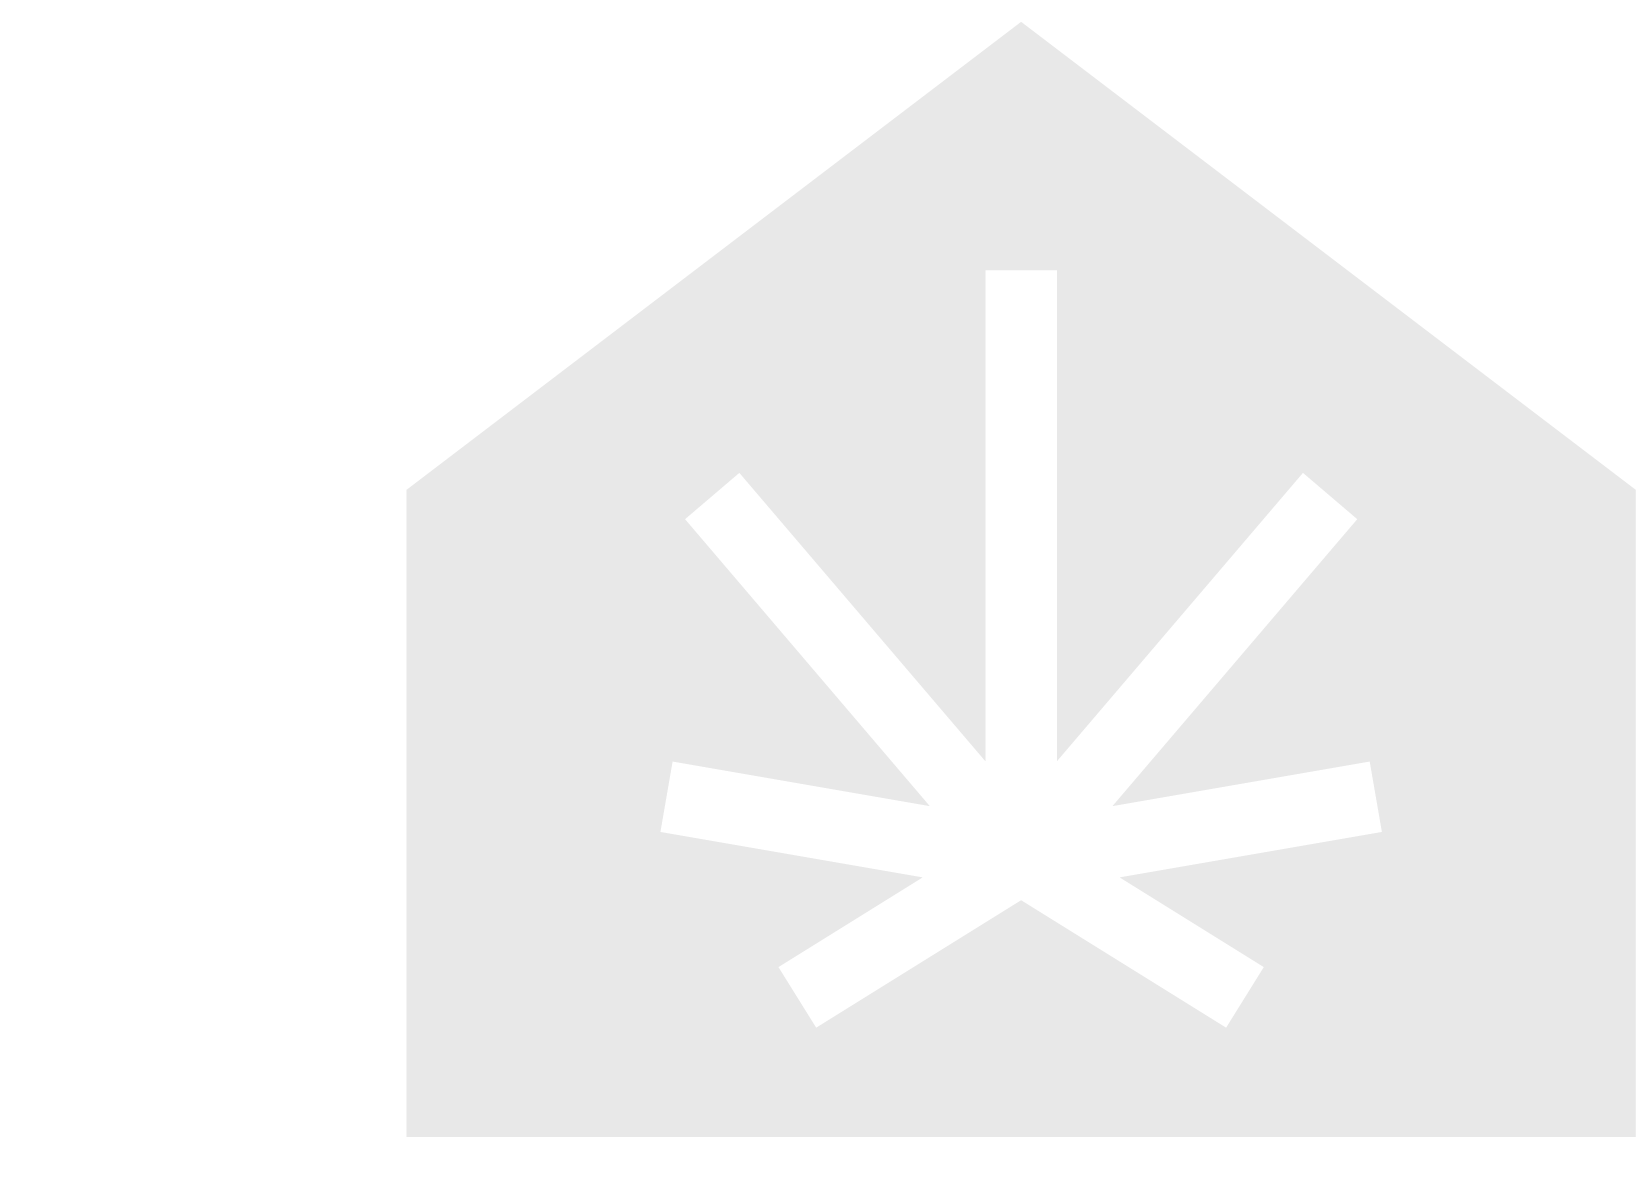 Imagen del isotipo de la empresa en color gris claro.